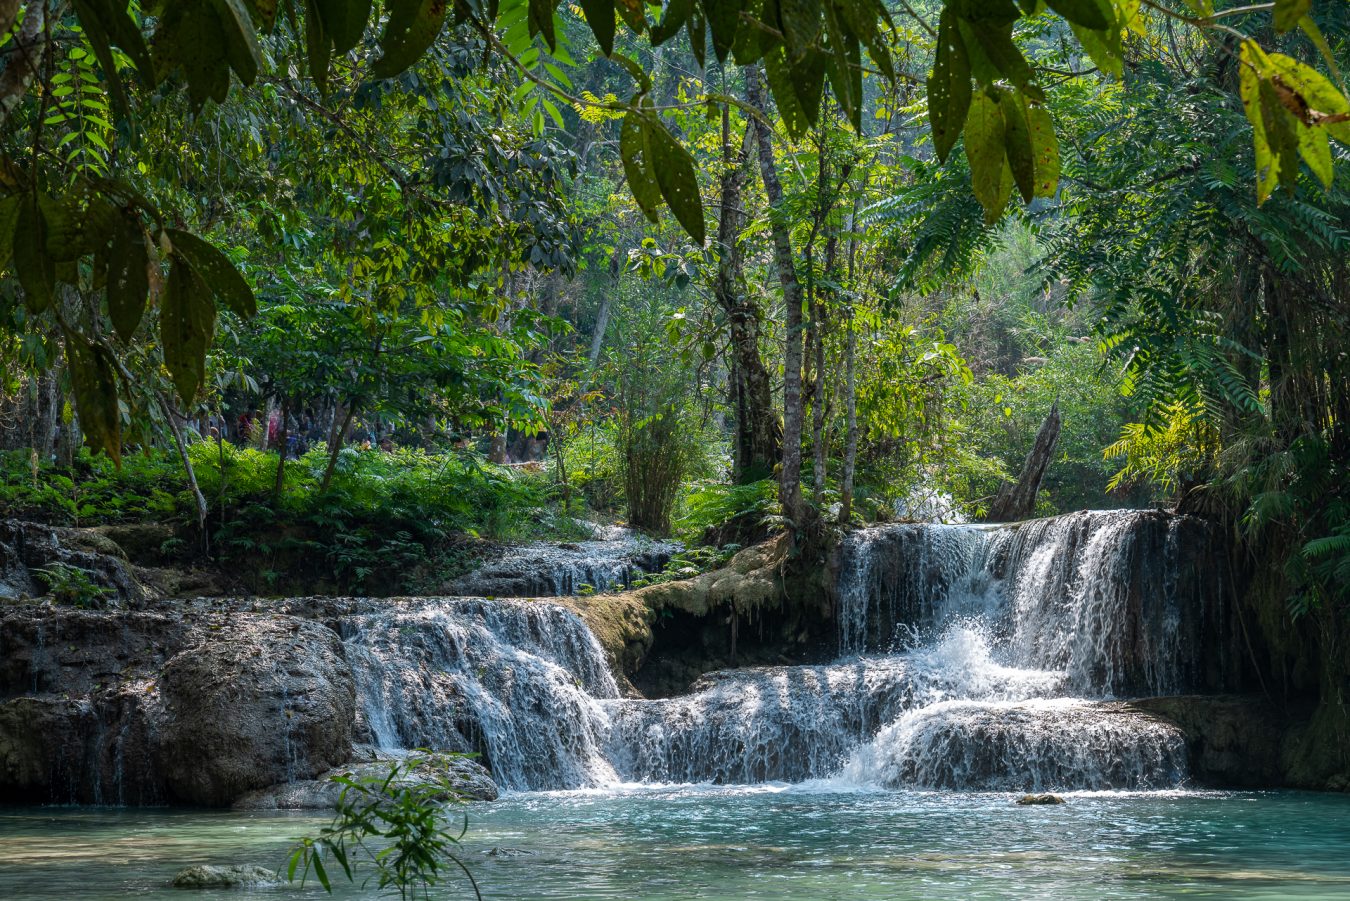 Laos, Kuang Si Waterfall